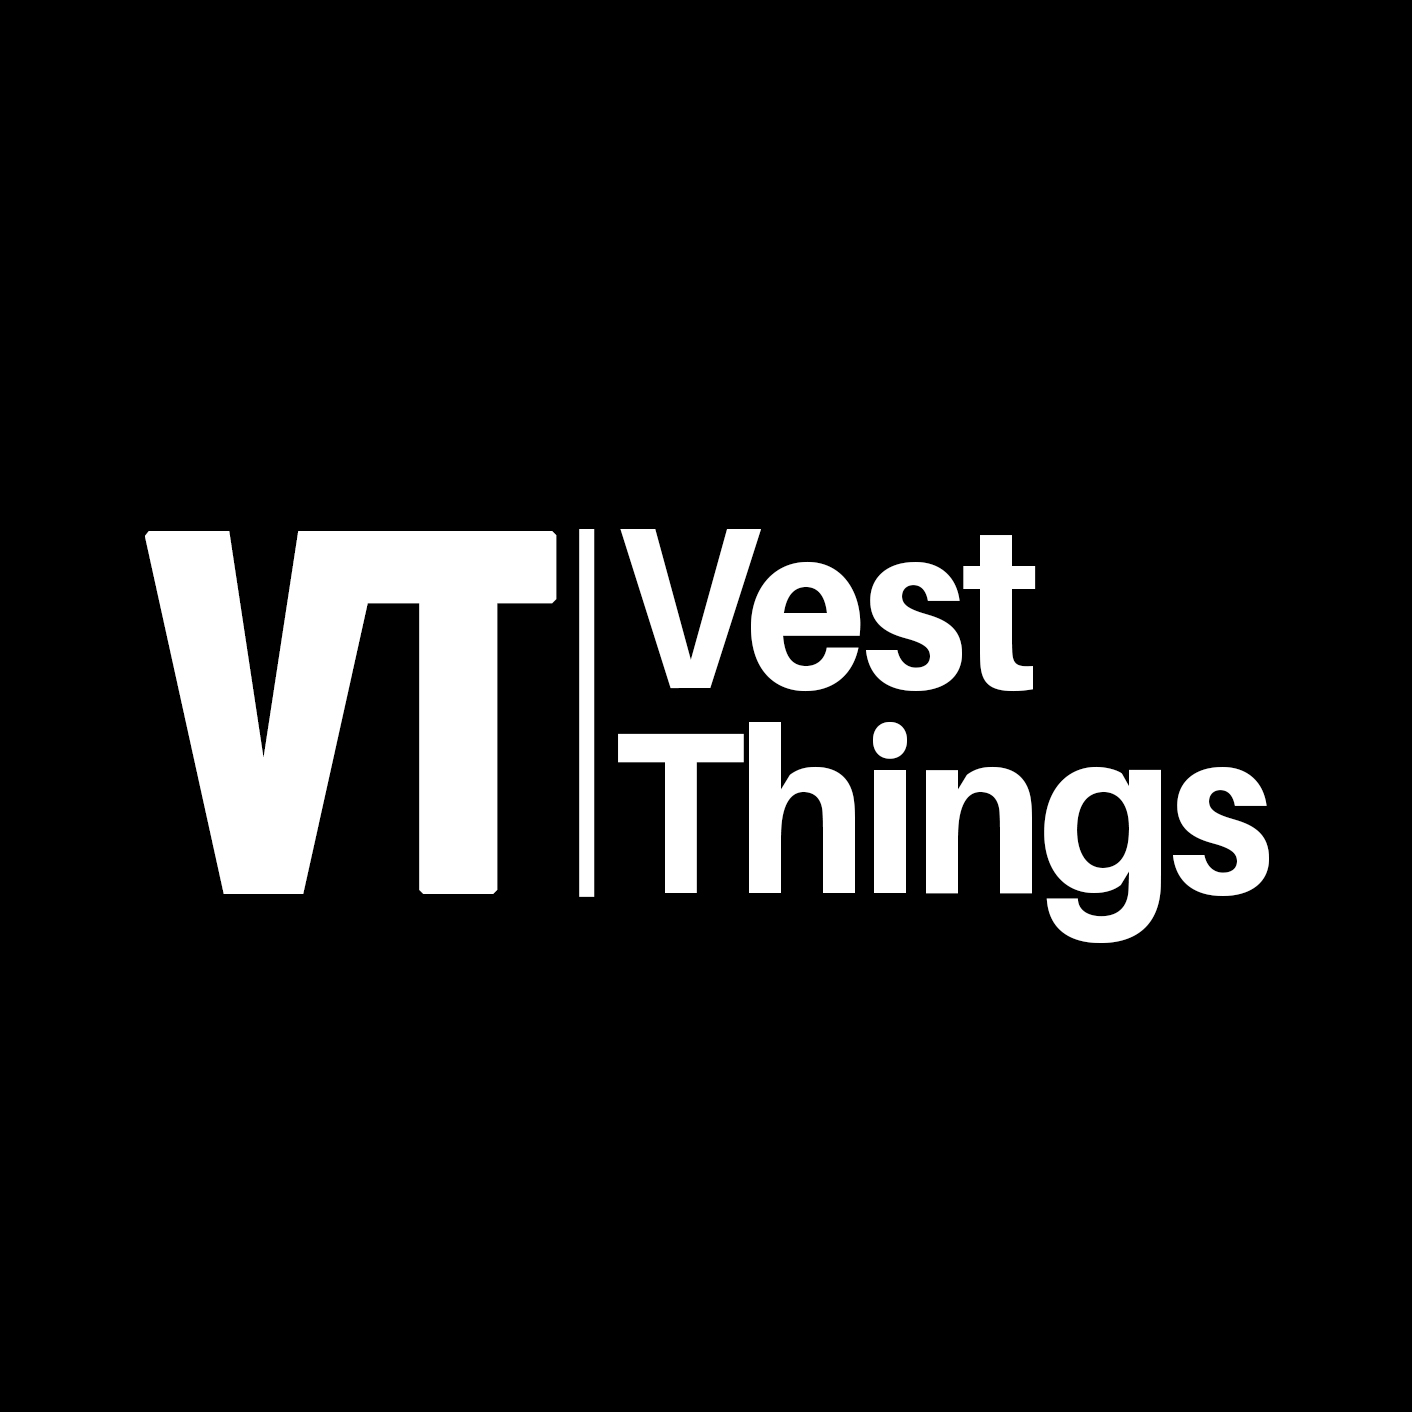 Vestthings%40gmail.com